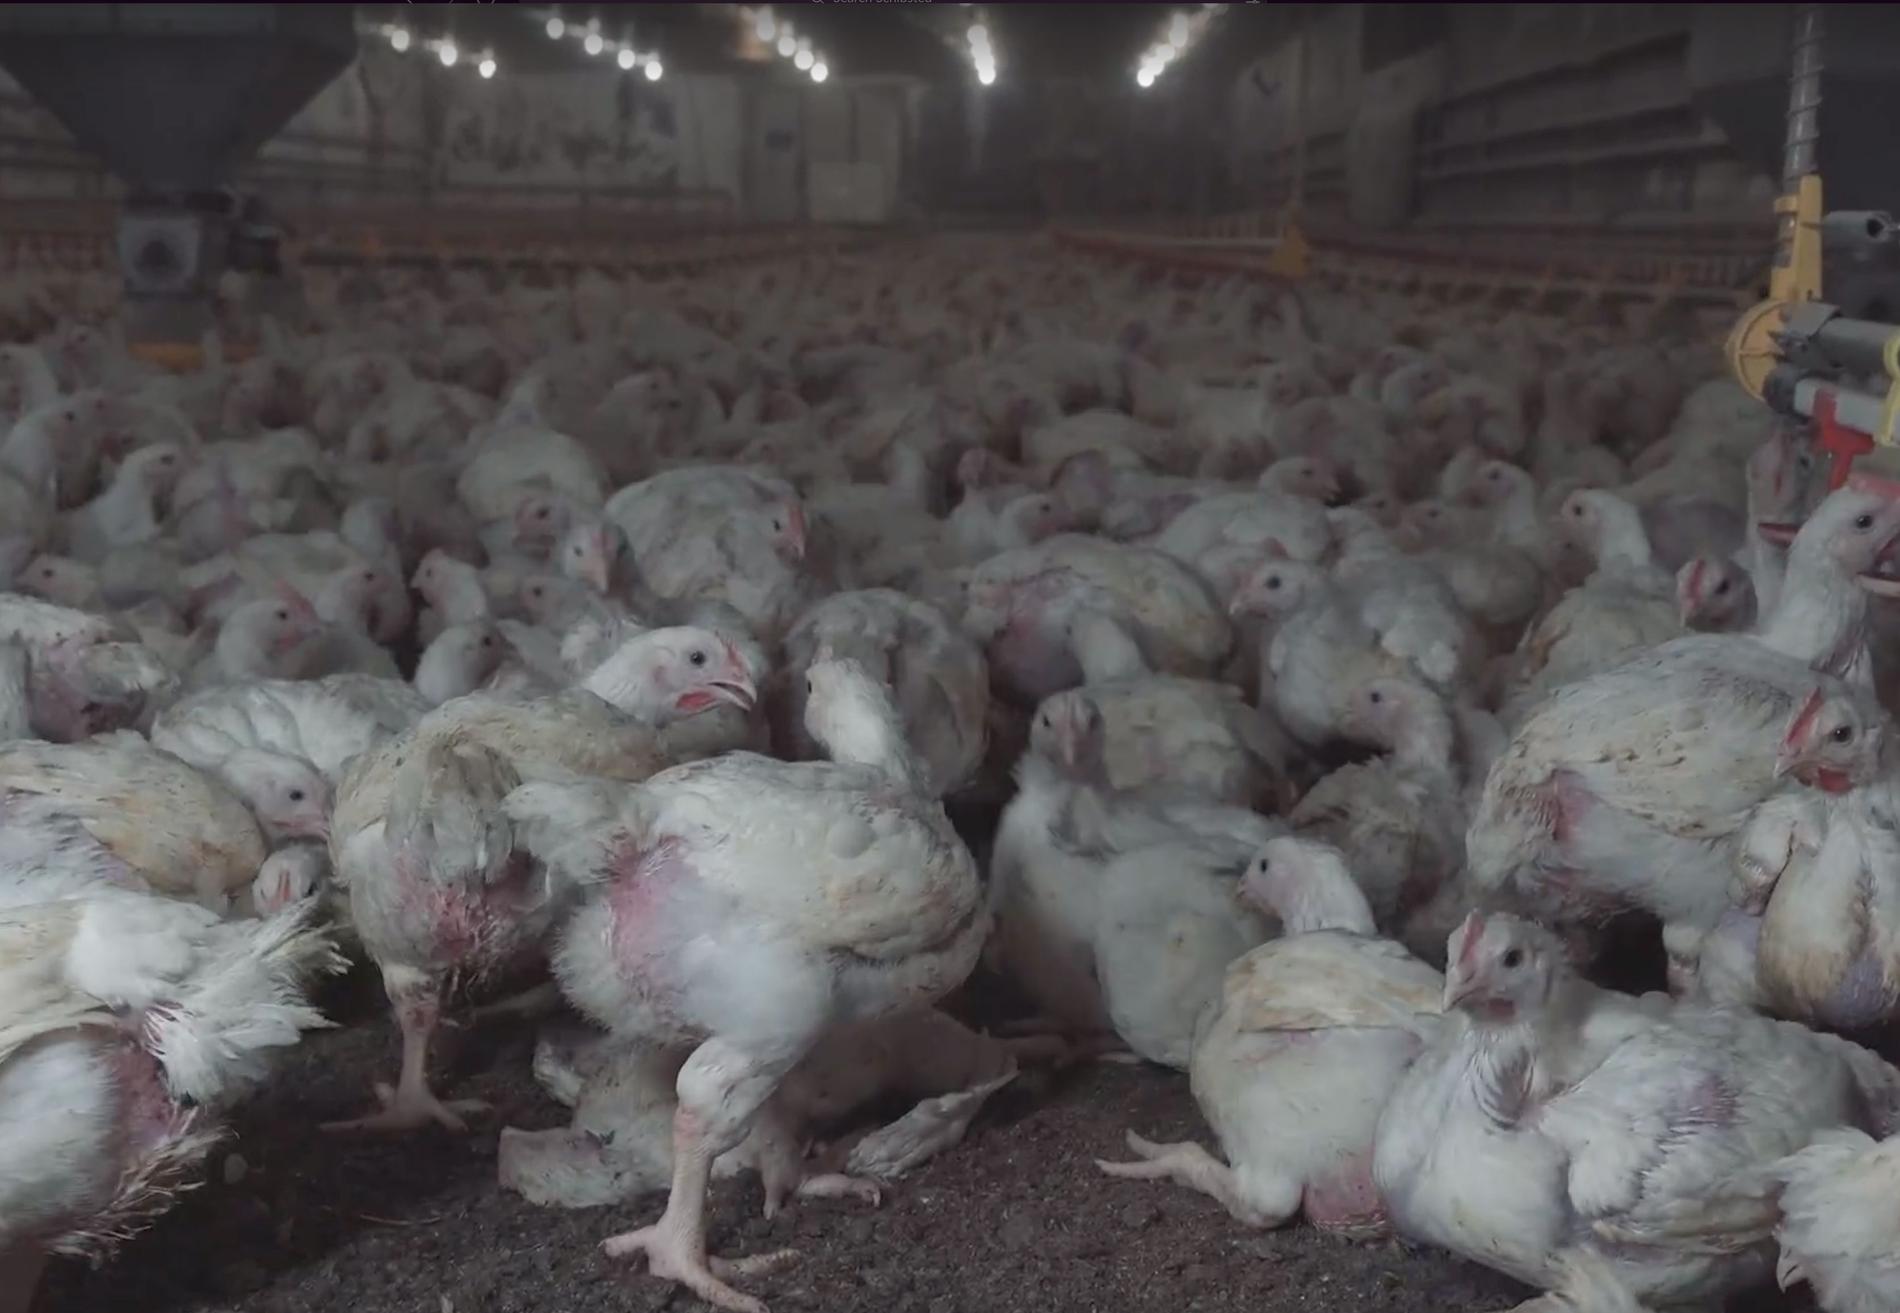 ”I Frankrike får 20 procent av kycklingarna gå utomhus, i Sverige knappt en procent”, säger Camilla Bergvall på Djurens rätt. 